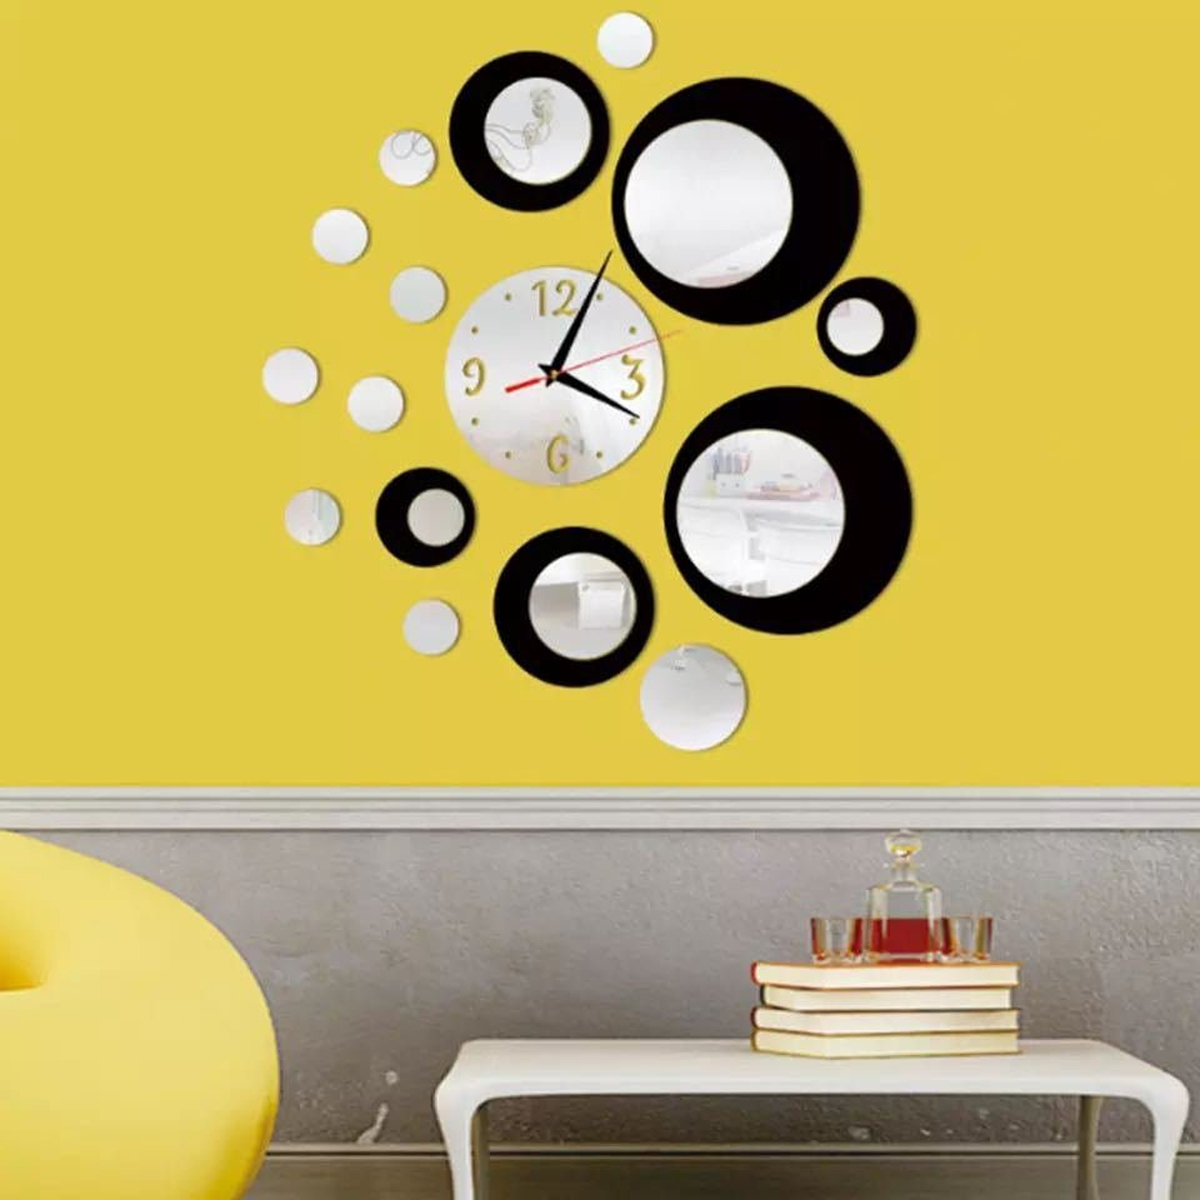 Uhr DEDOM Dekorative Wanduhr Wanduhr für Acrylspiegel glatte Holzwände, Tapeten Wanduhr,